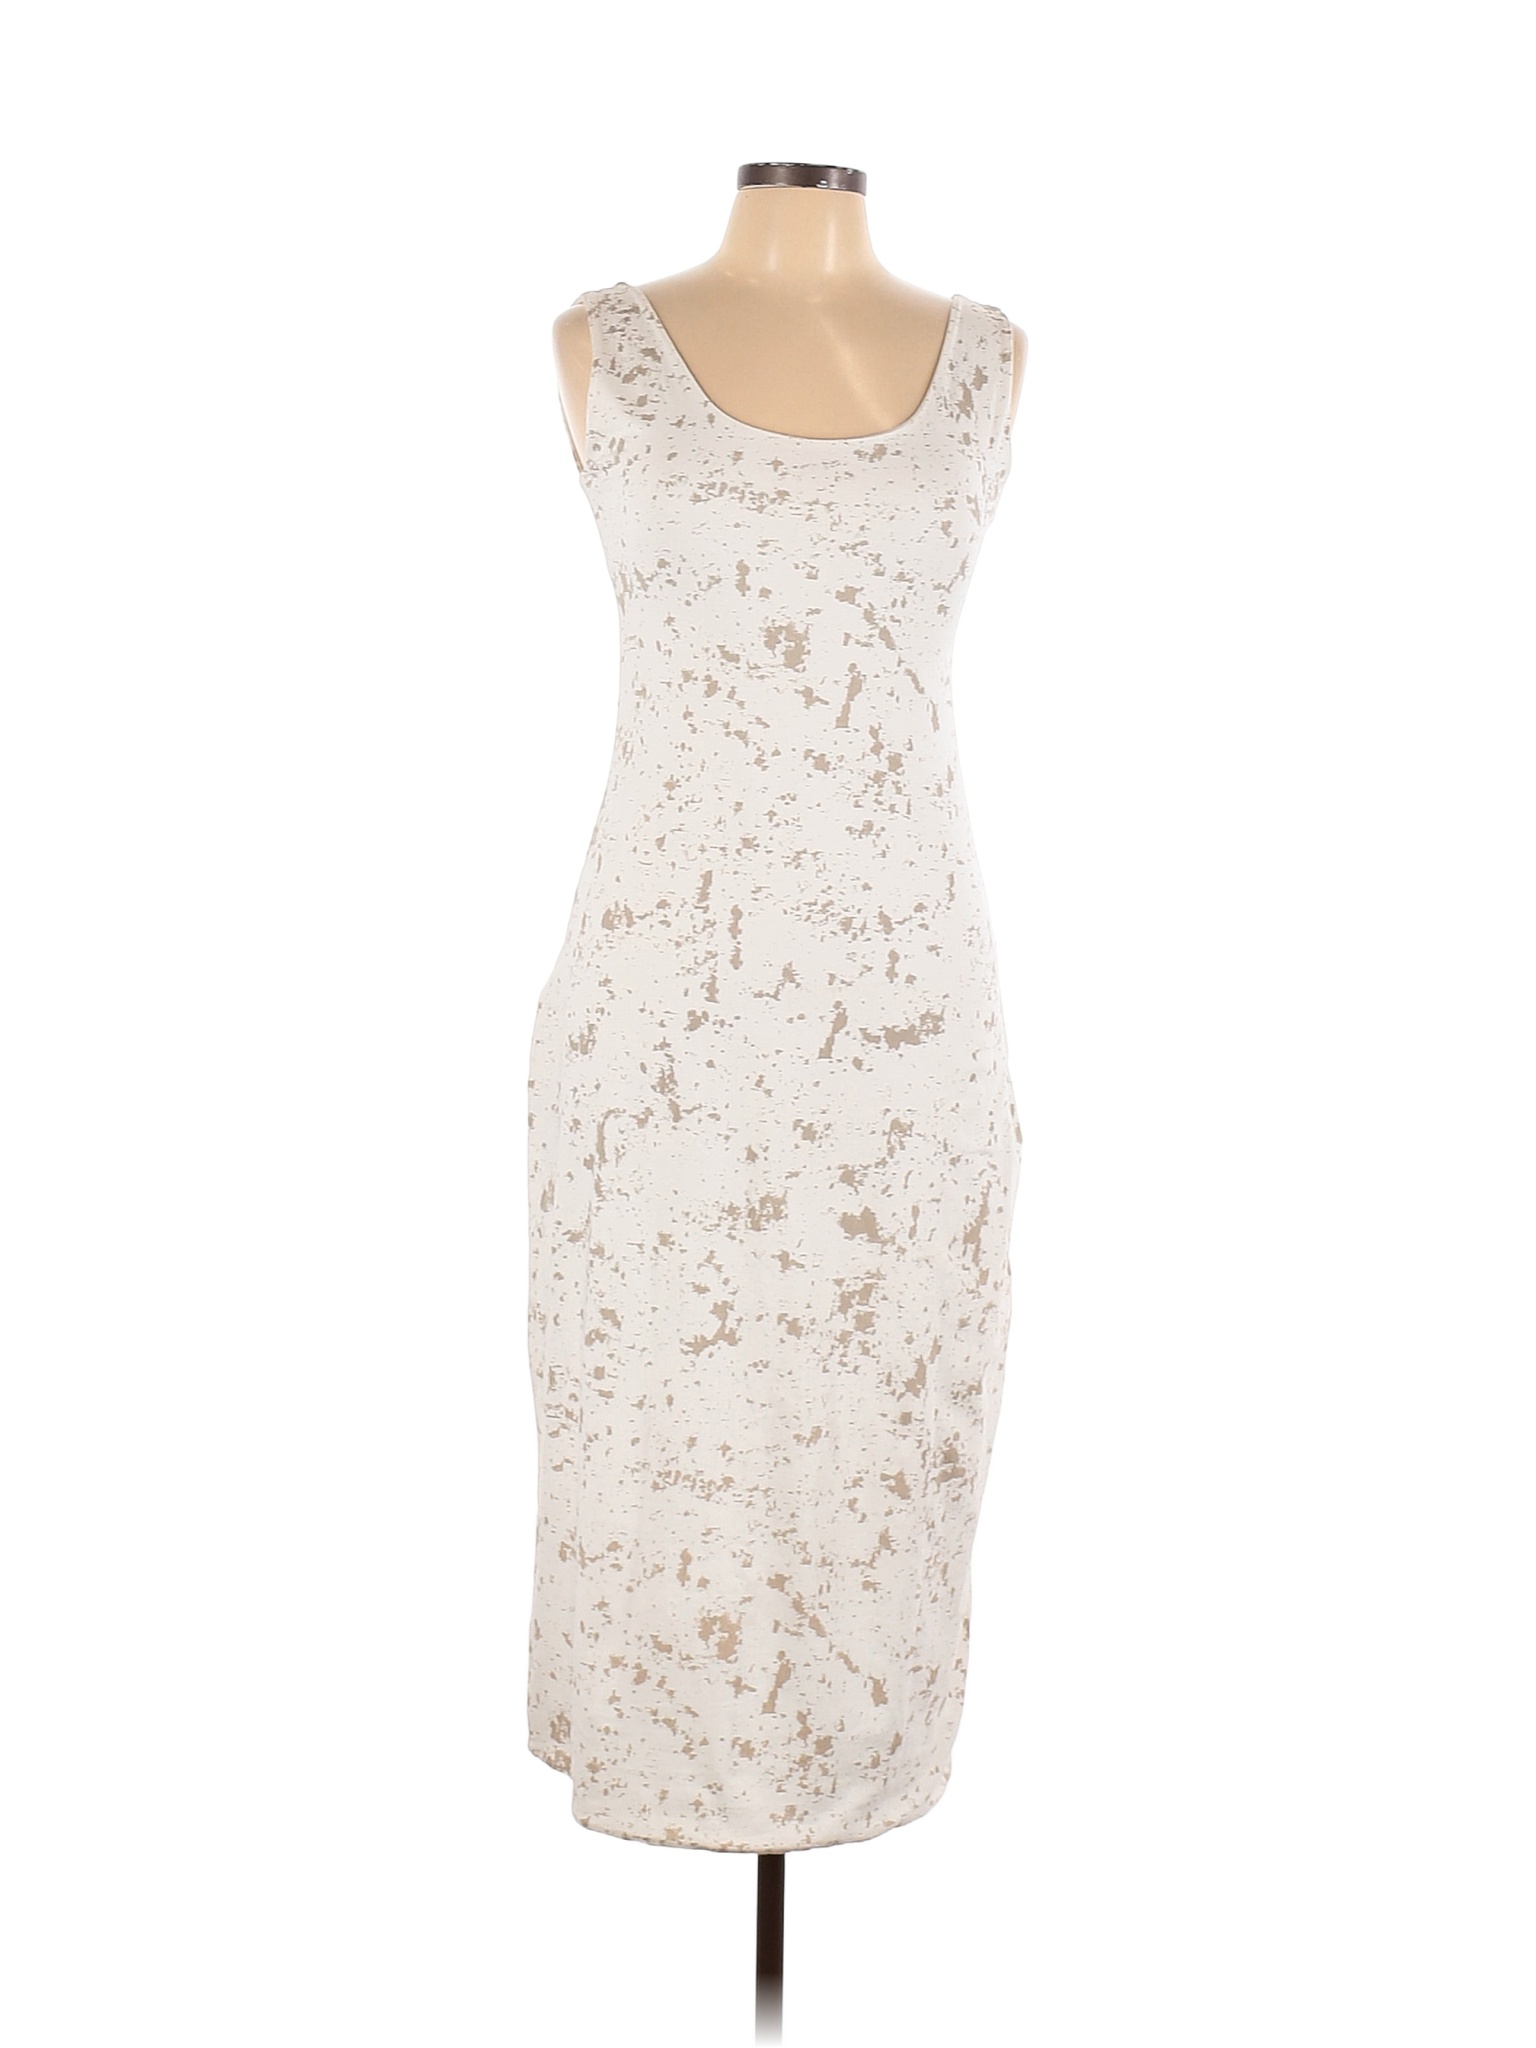 Matthildur White Casual Dress Size M - 80% off | thredUP